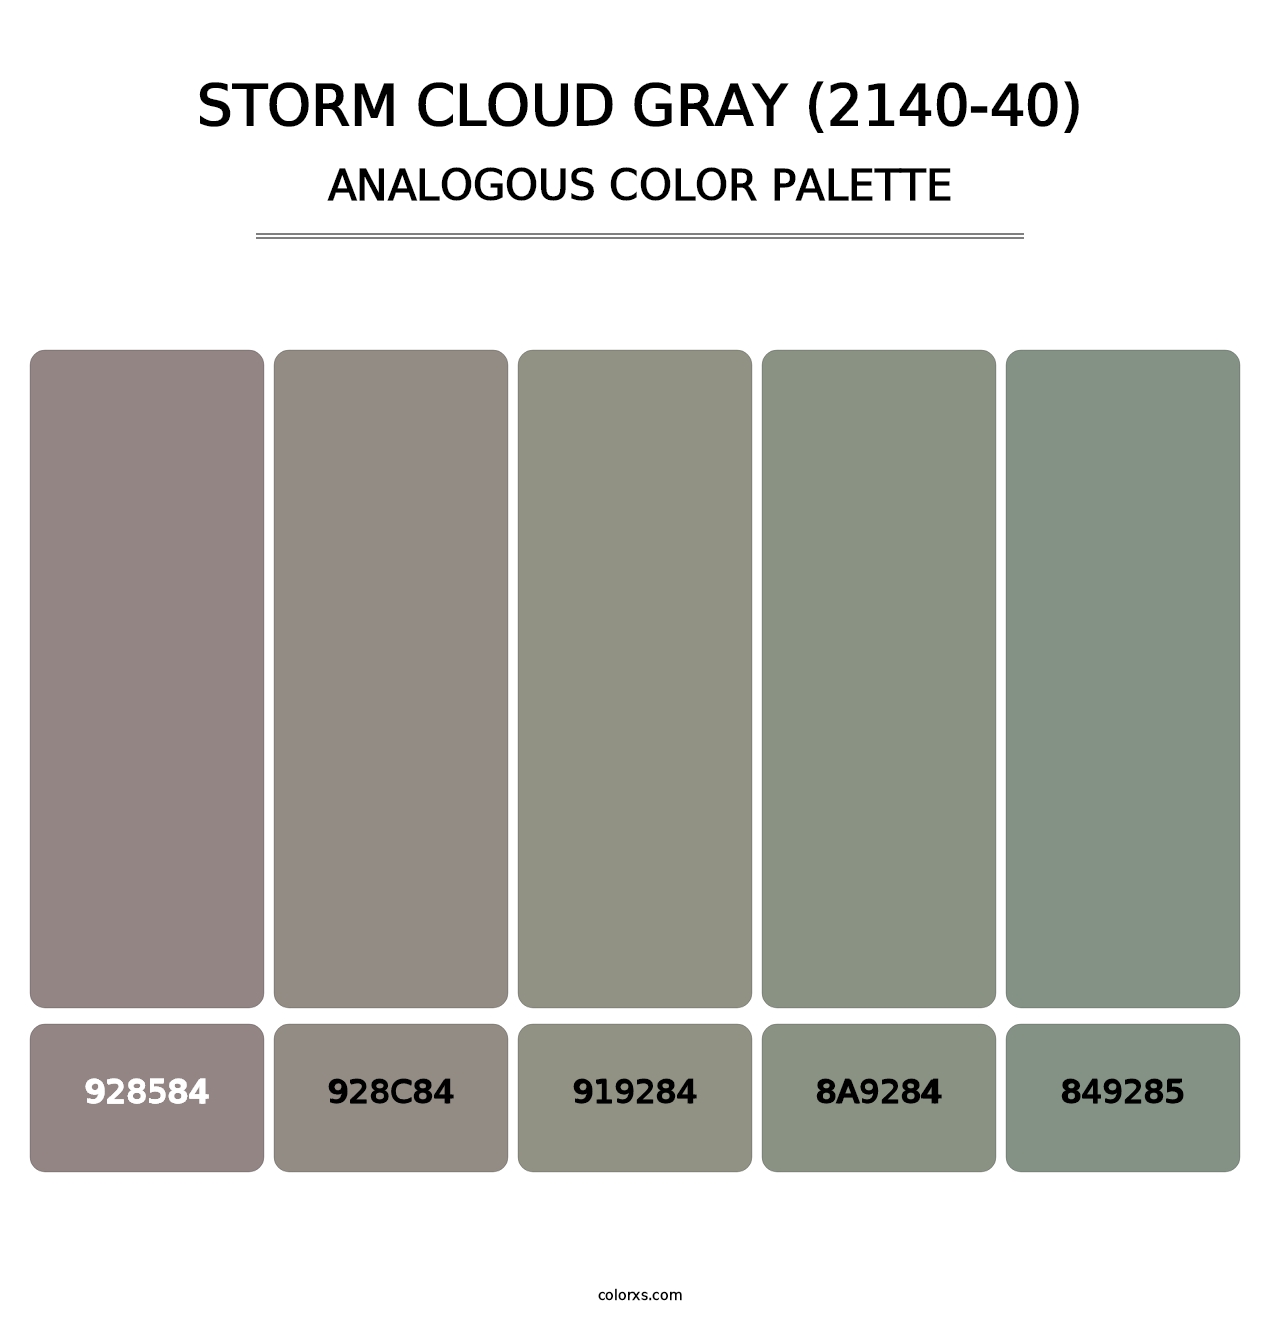 Storm Cloud Gray (2140-40) - Analogous Color Palette